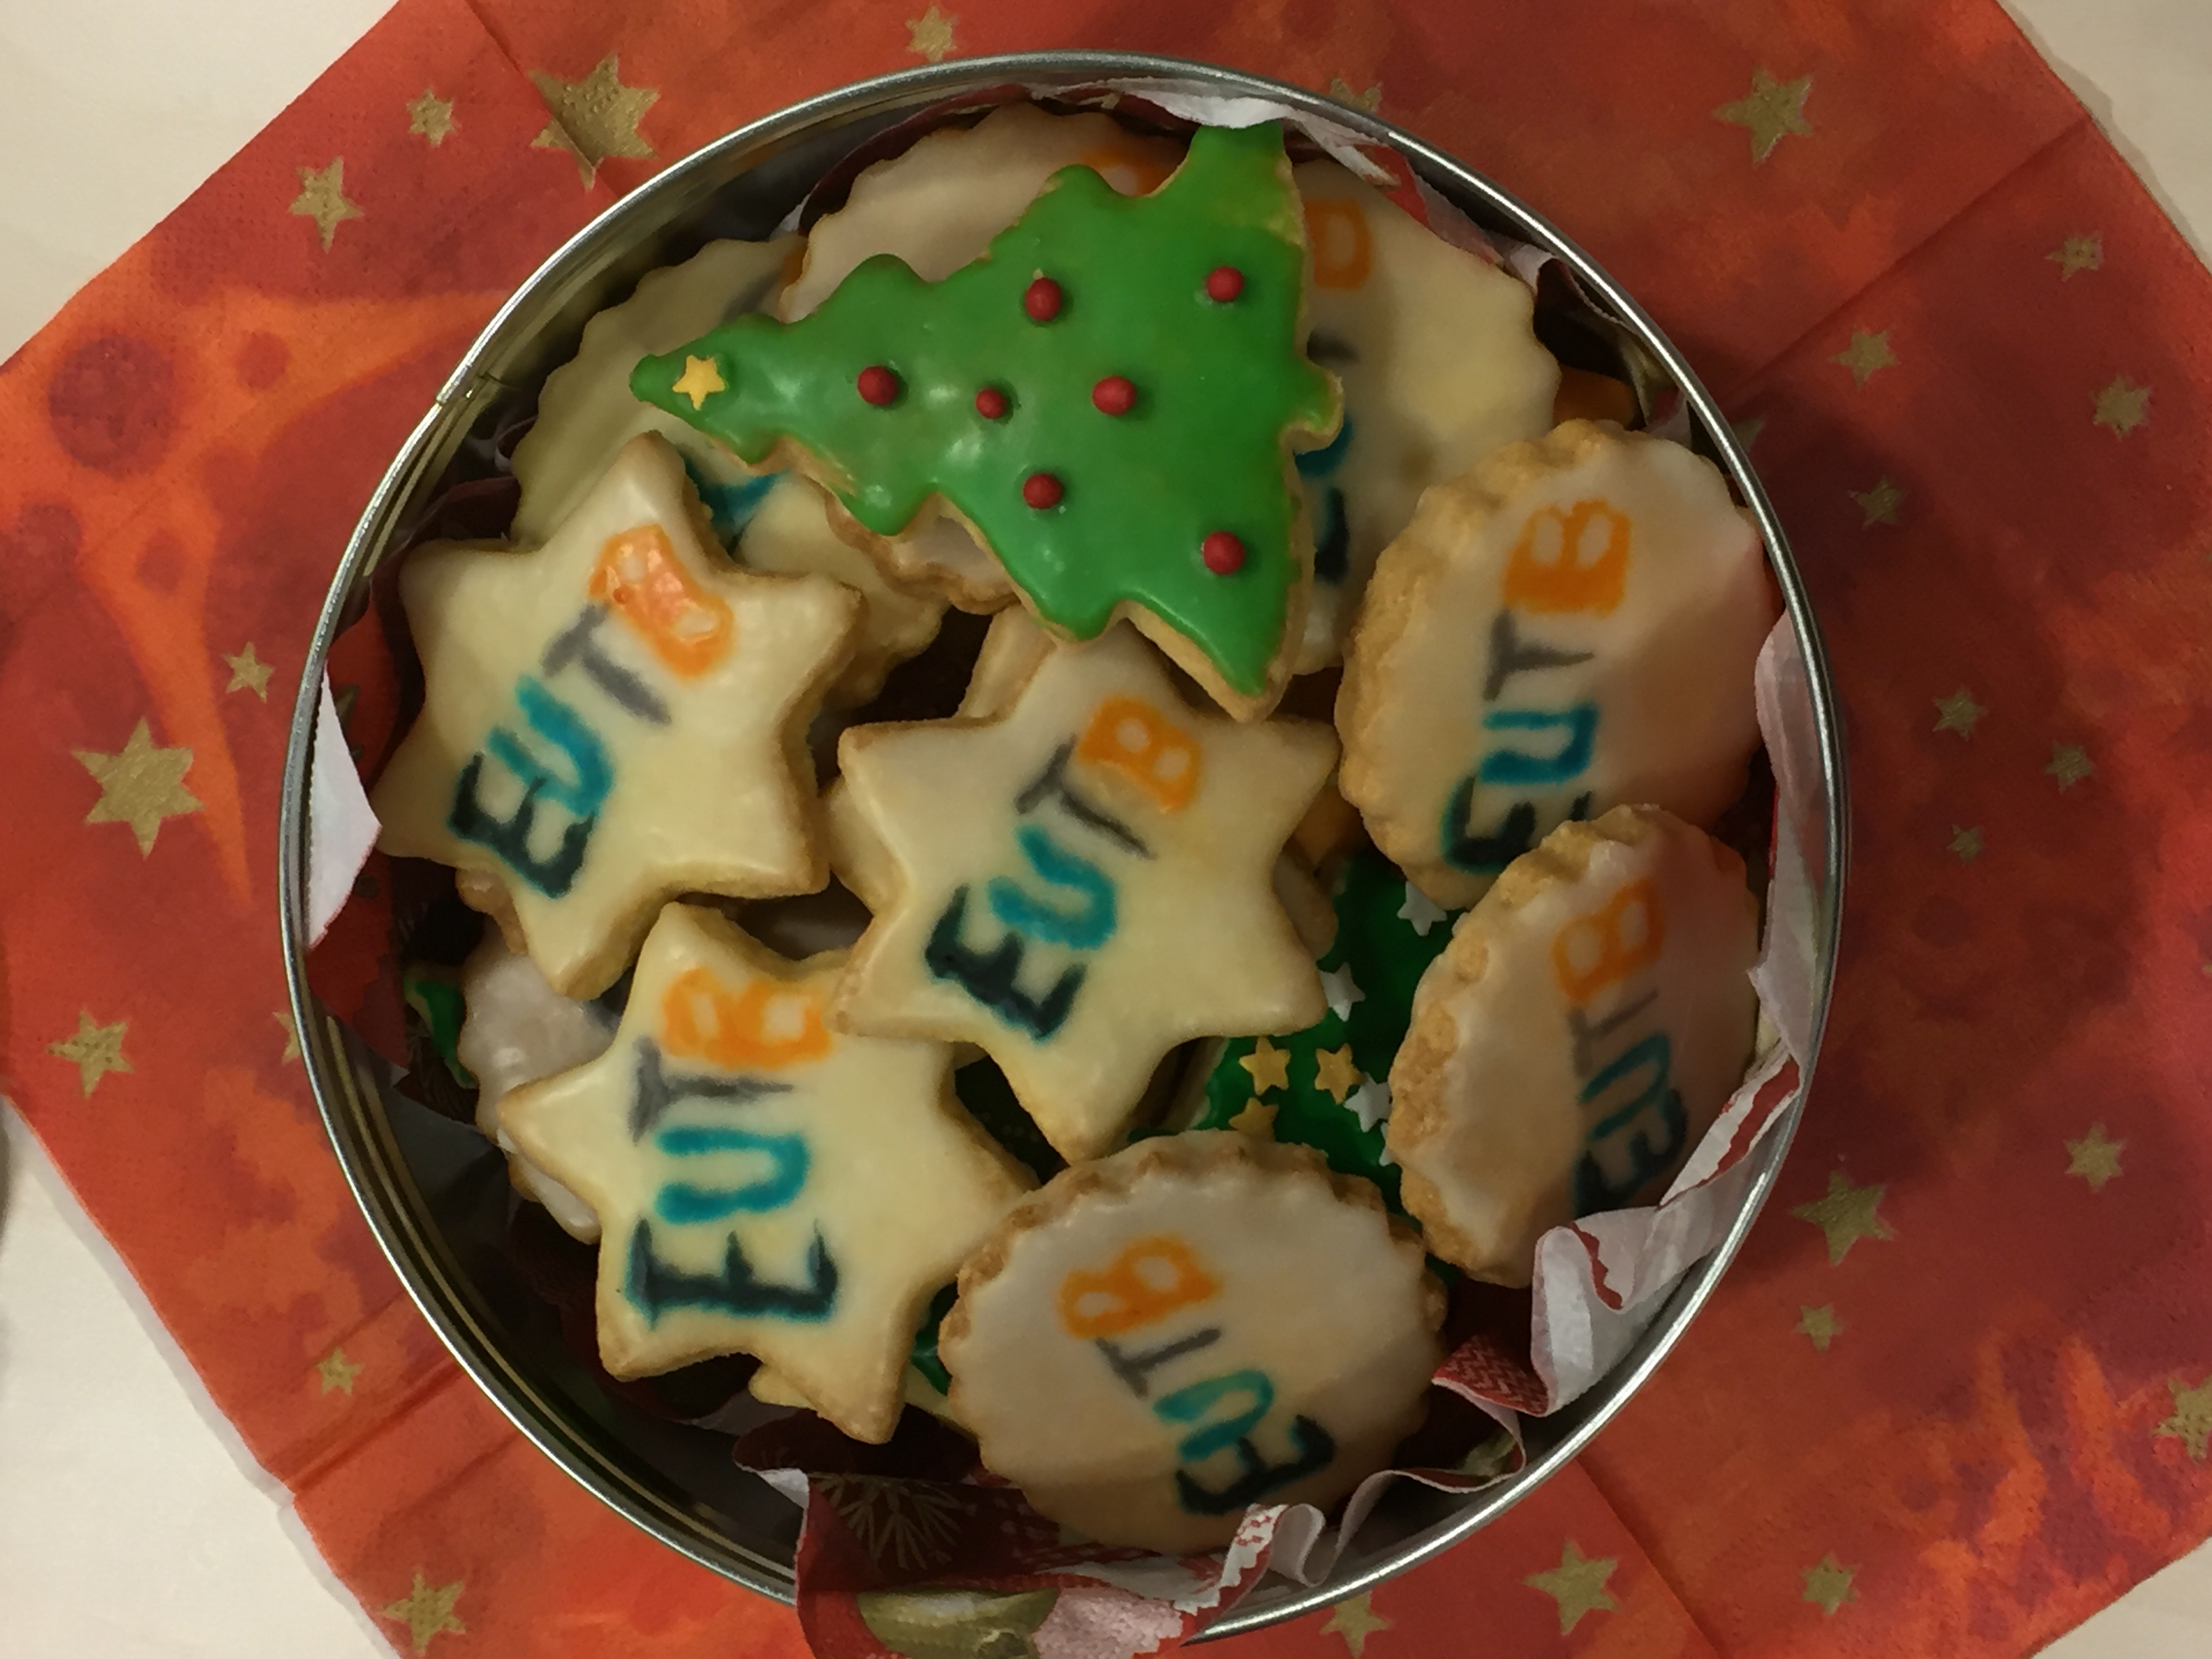 Runde Dose mit sternförmigen Keksen, die das EUTB-Logo zeigen. Ebenfalls gibt es tannenbaumförmige Kekse. Die Keksdose steht auf einer roten Serviette mit Sternen.